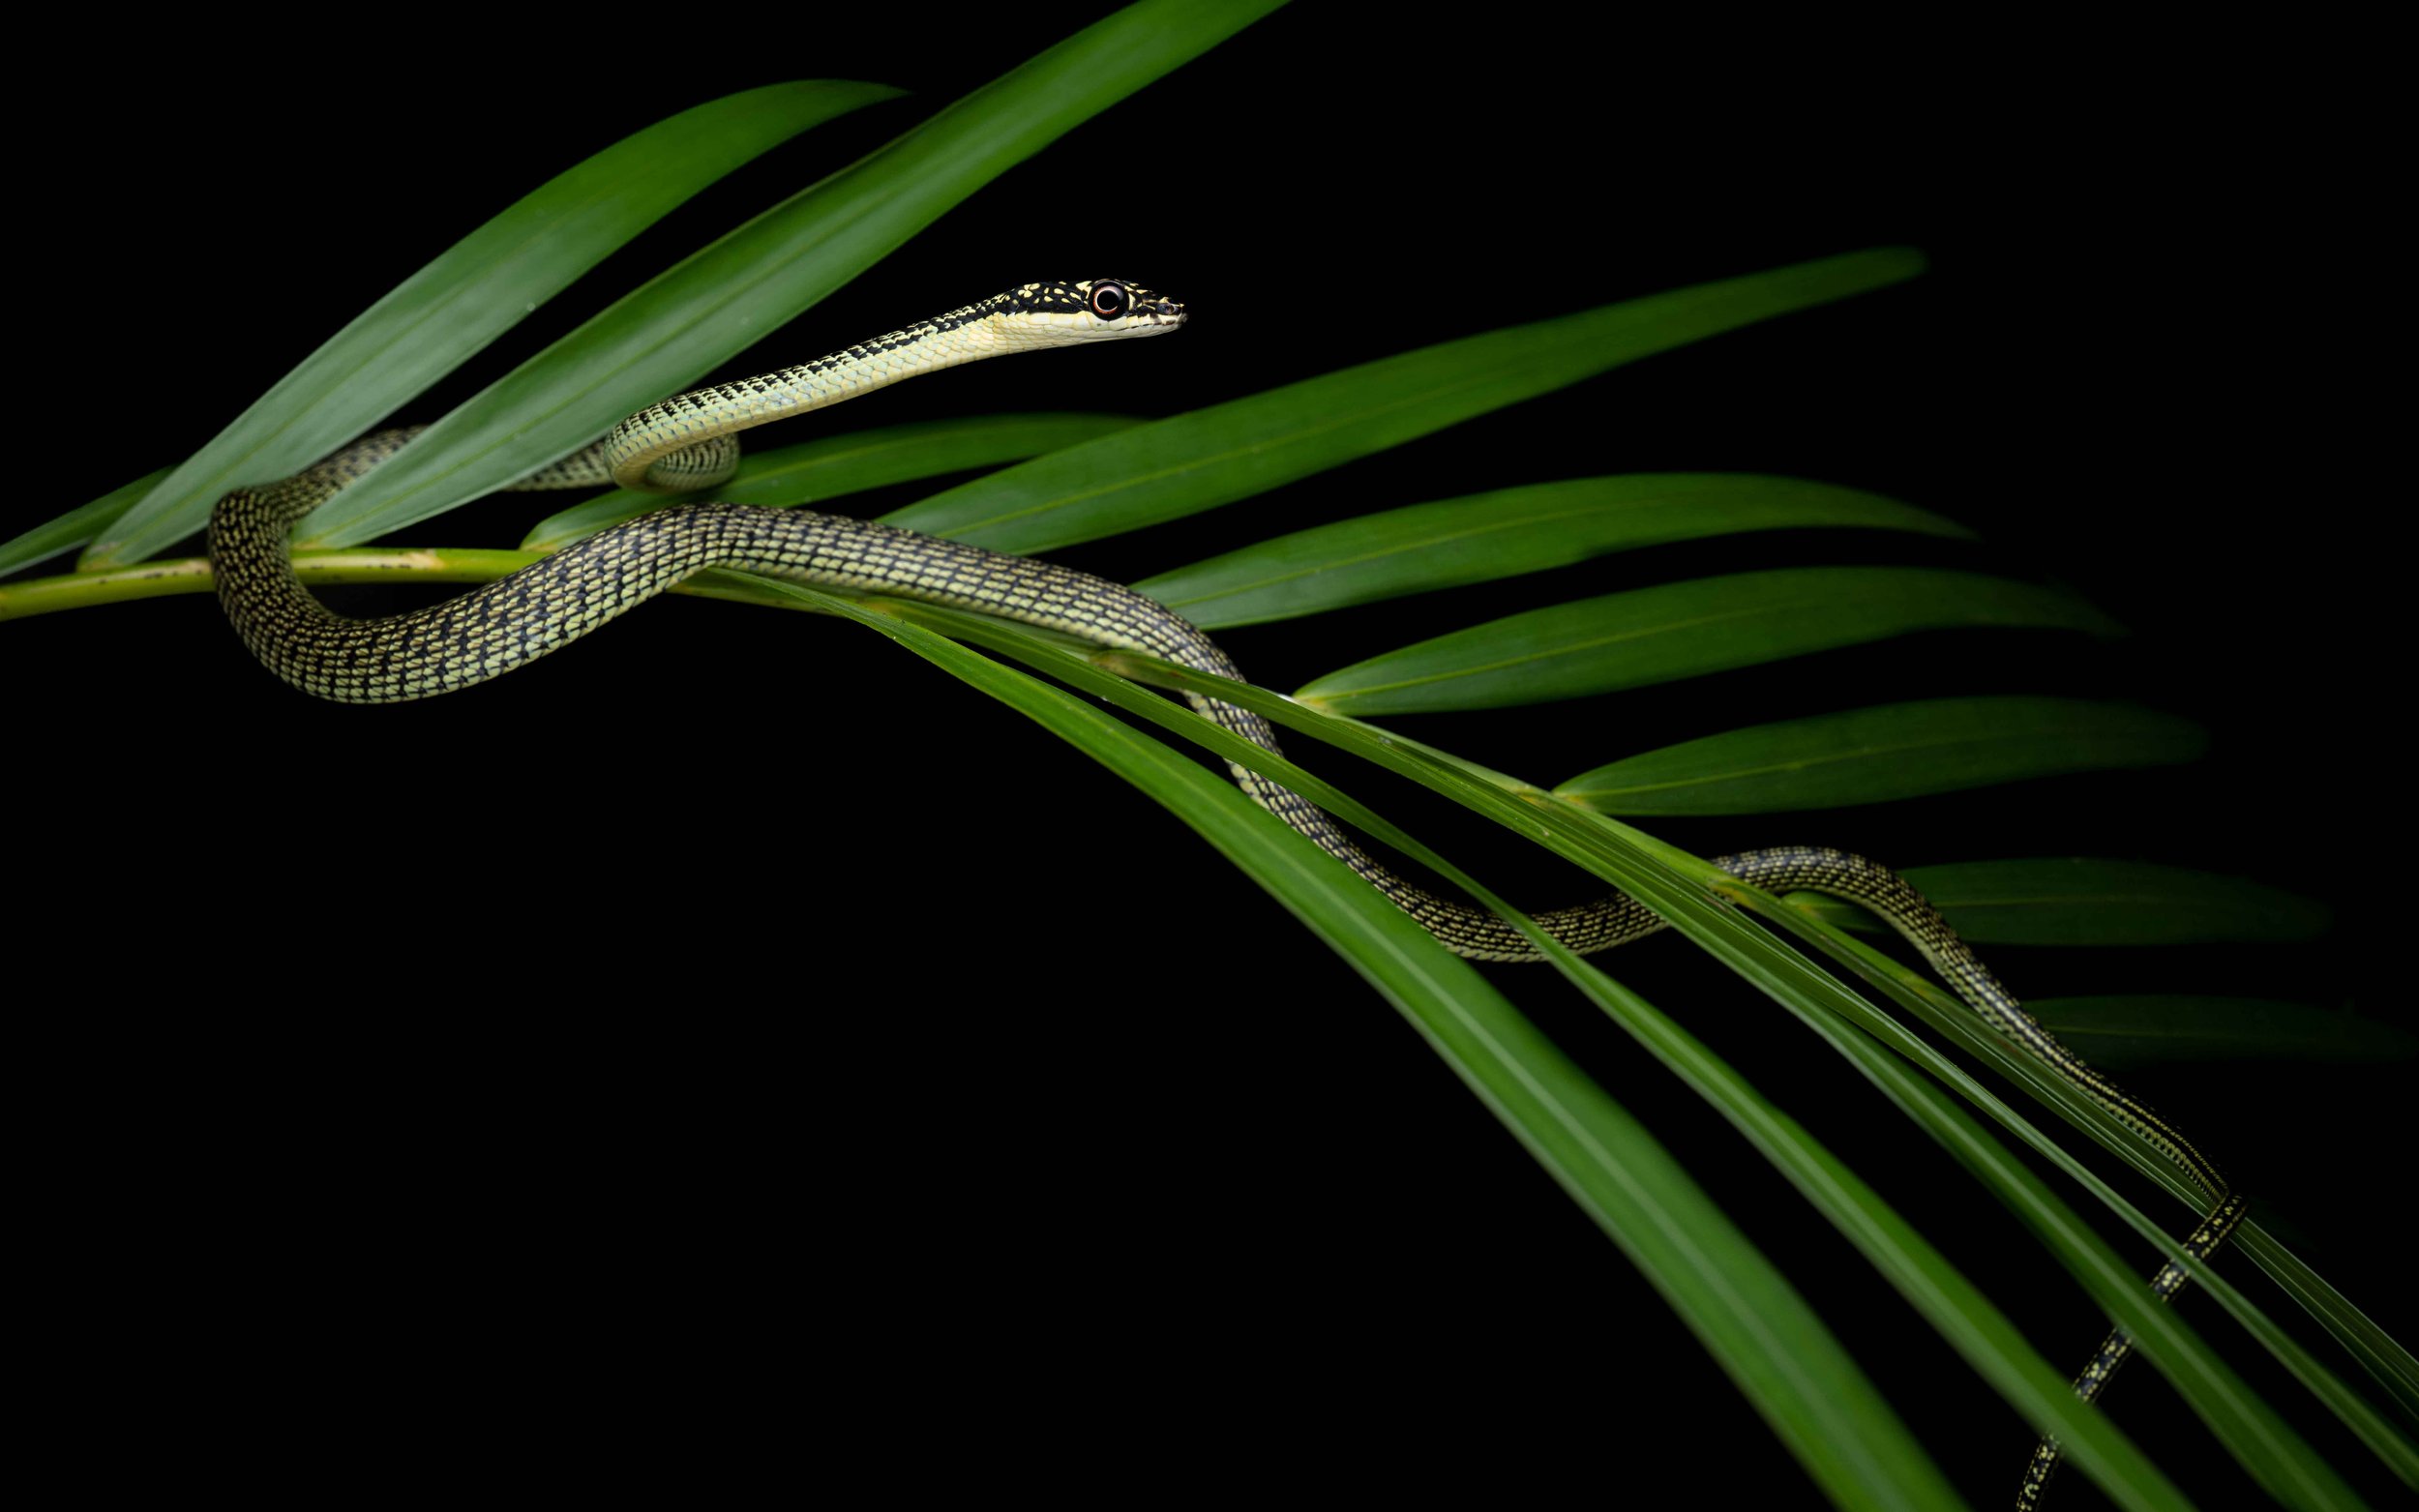 Ornate flying snake - Golden Tree snake - Chrysopelea ornata